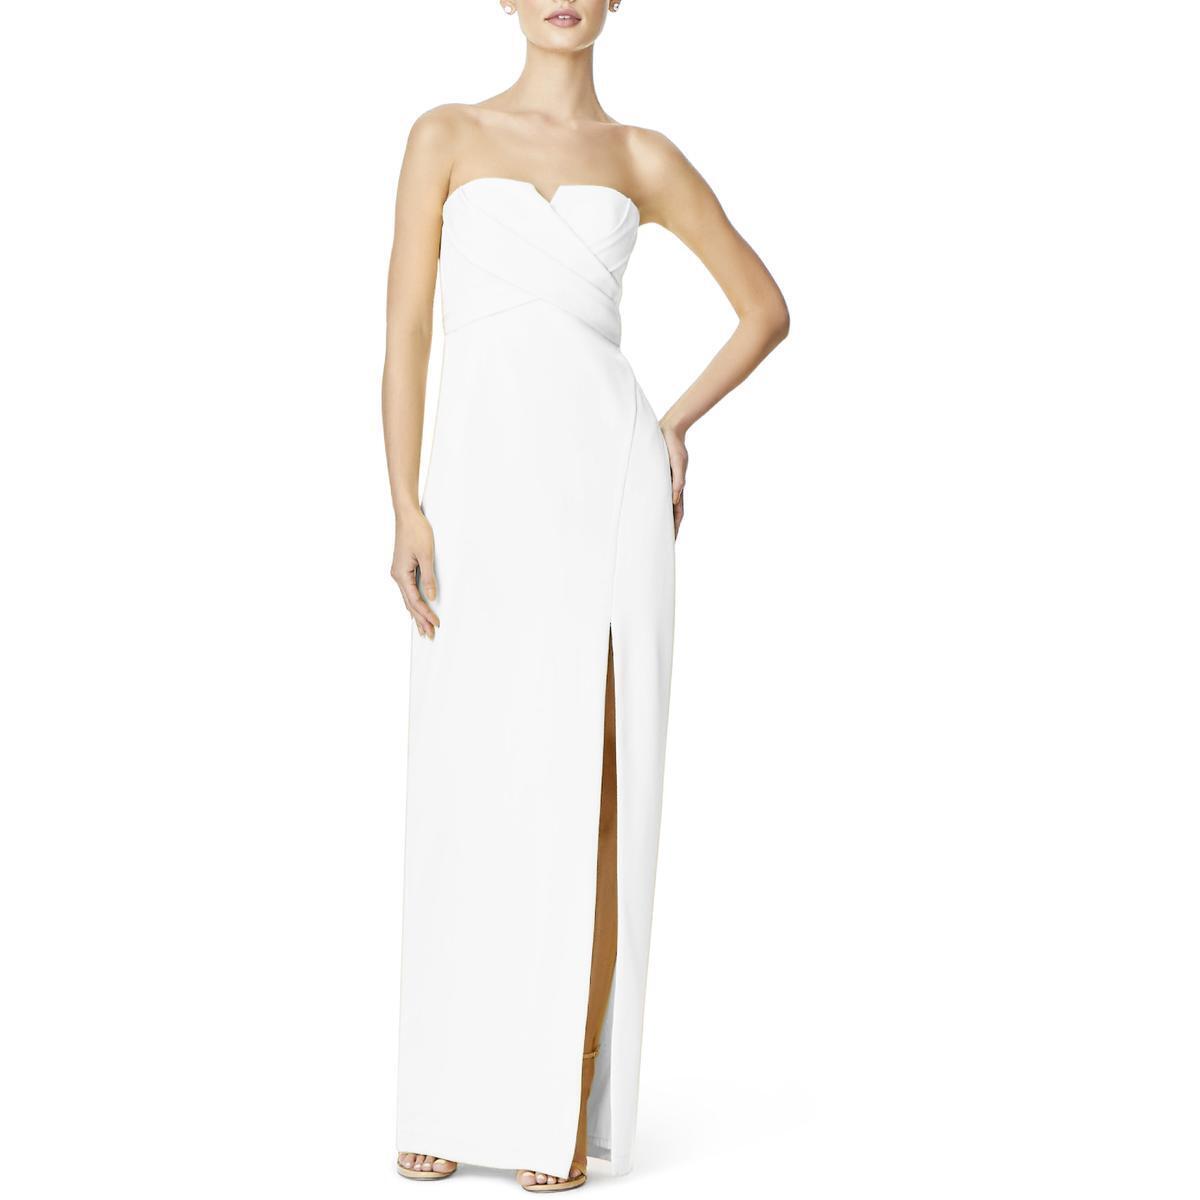 Aidan by Aidan Mattox Evening Dress Women's ivory Split Collar Gown 4 BHFO 1280